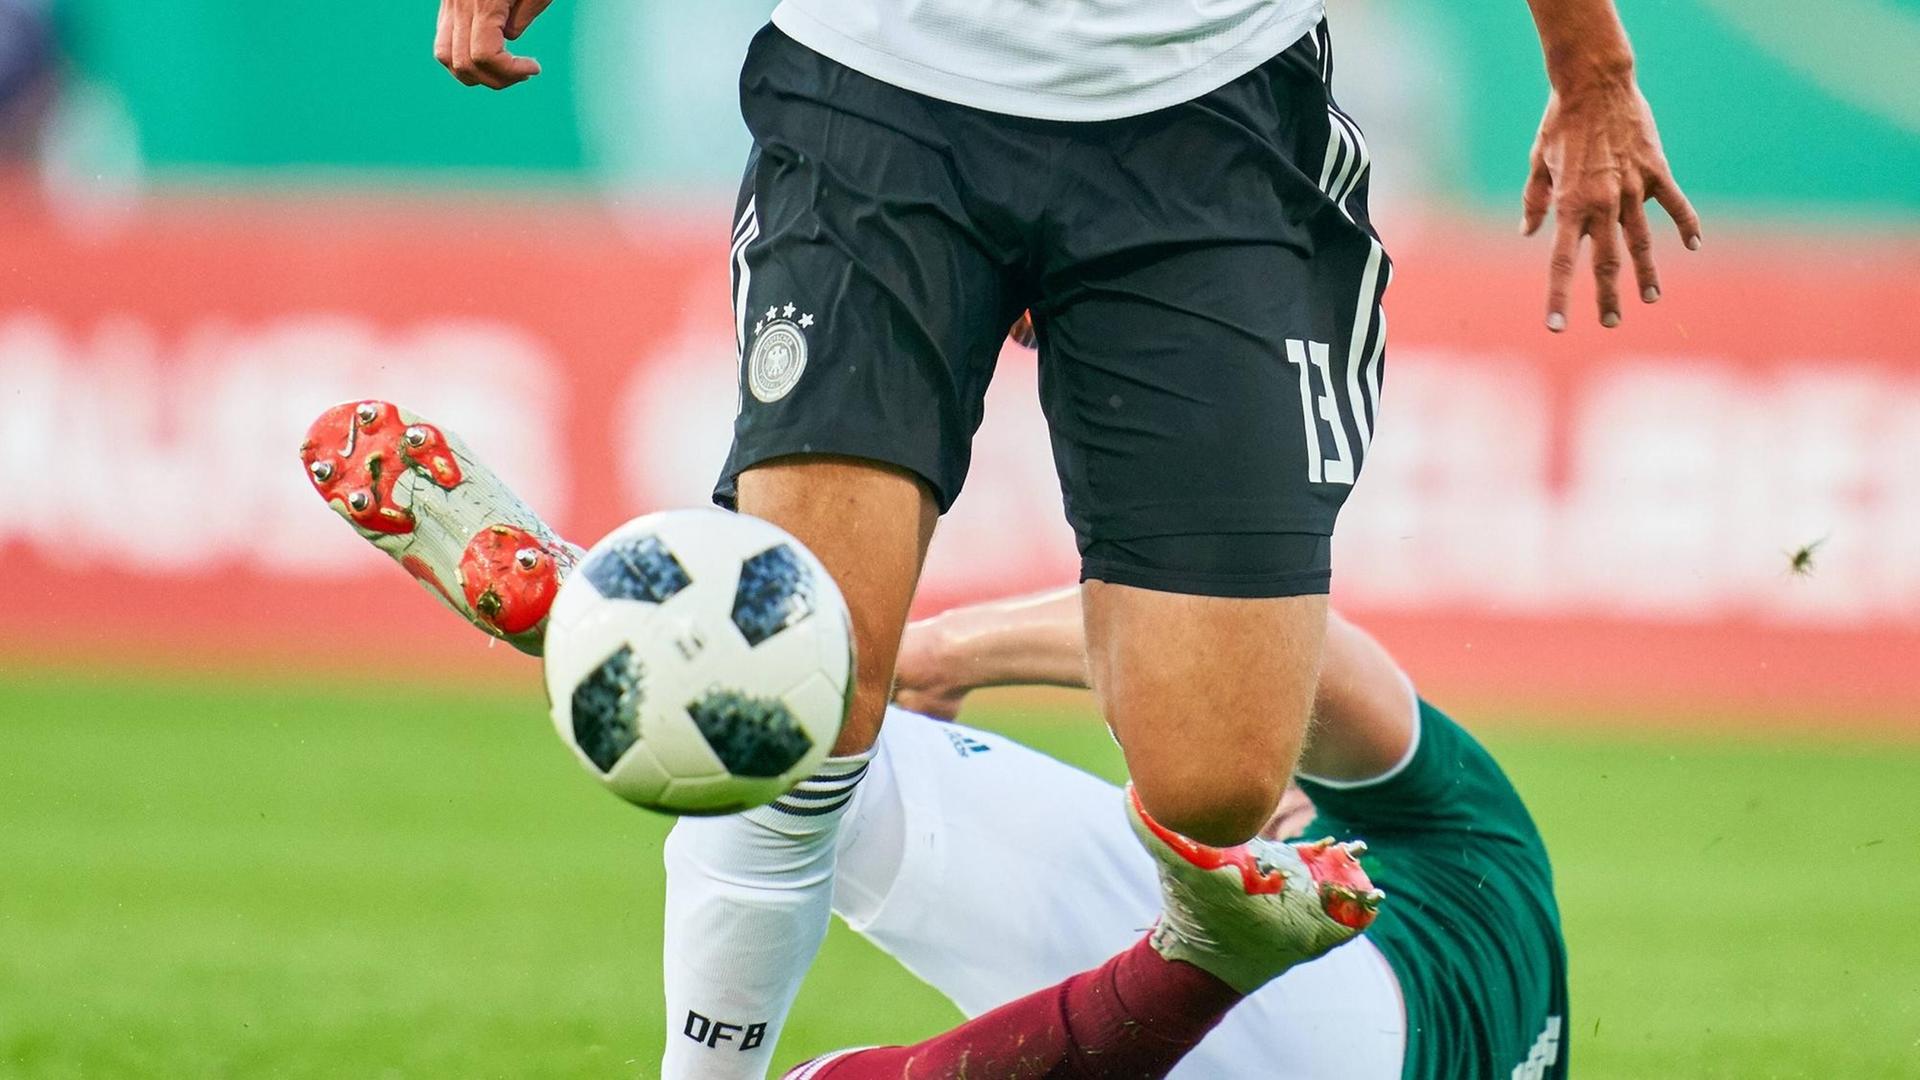 Ein deutscher U21-Spieler im Duell gegen einen mexikanischen Gegner, der am Boden liegt. Zu sehen sind nur die Beine der Spieler und der Ball.